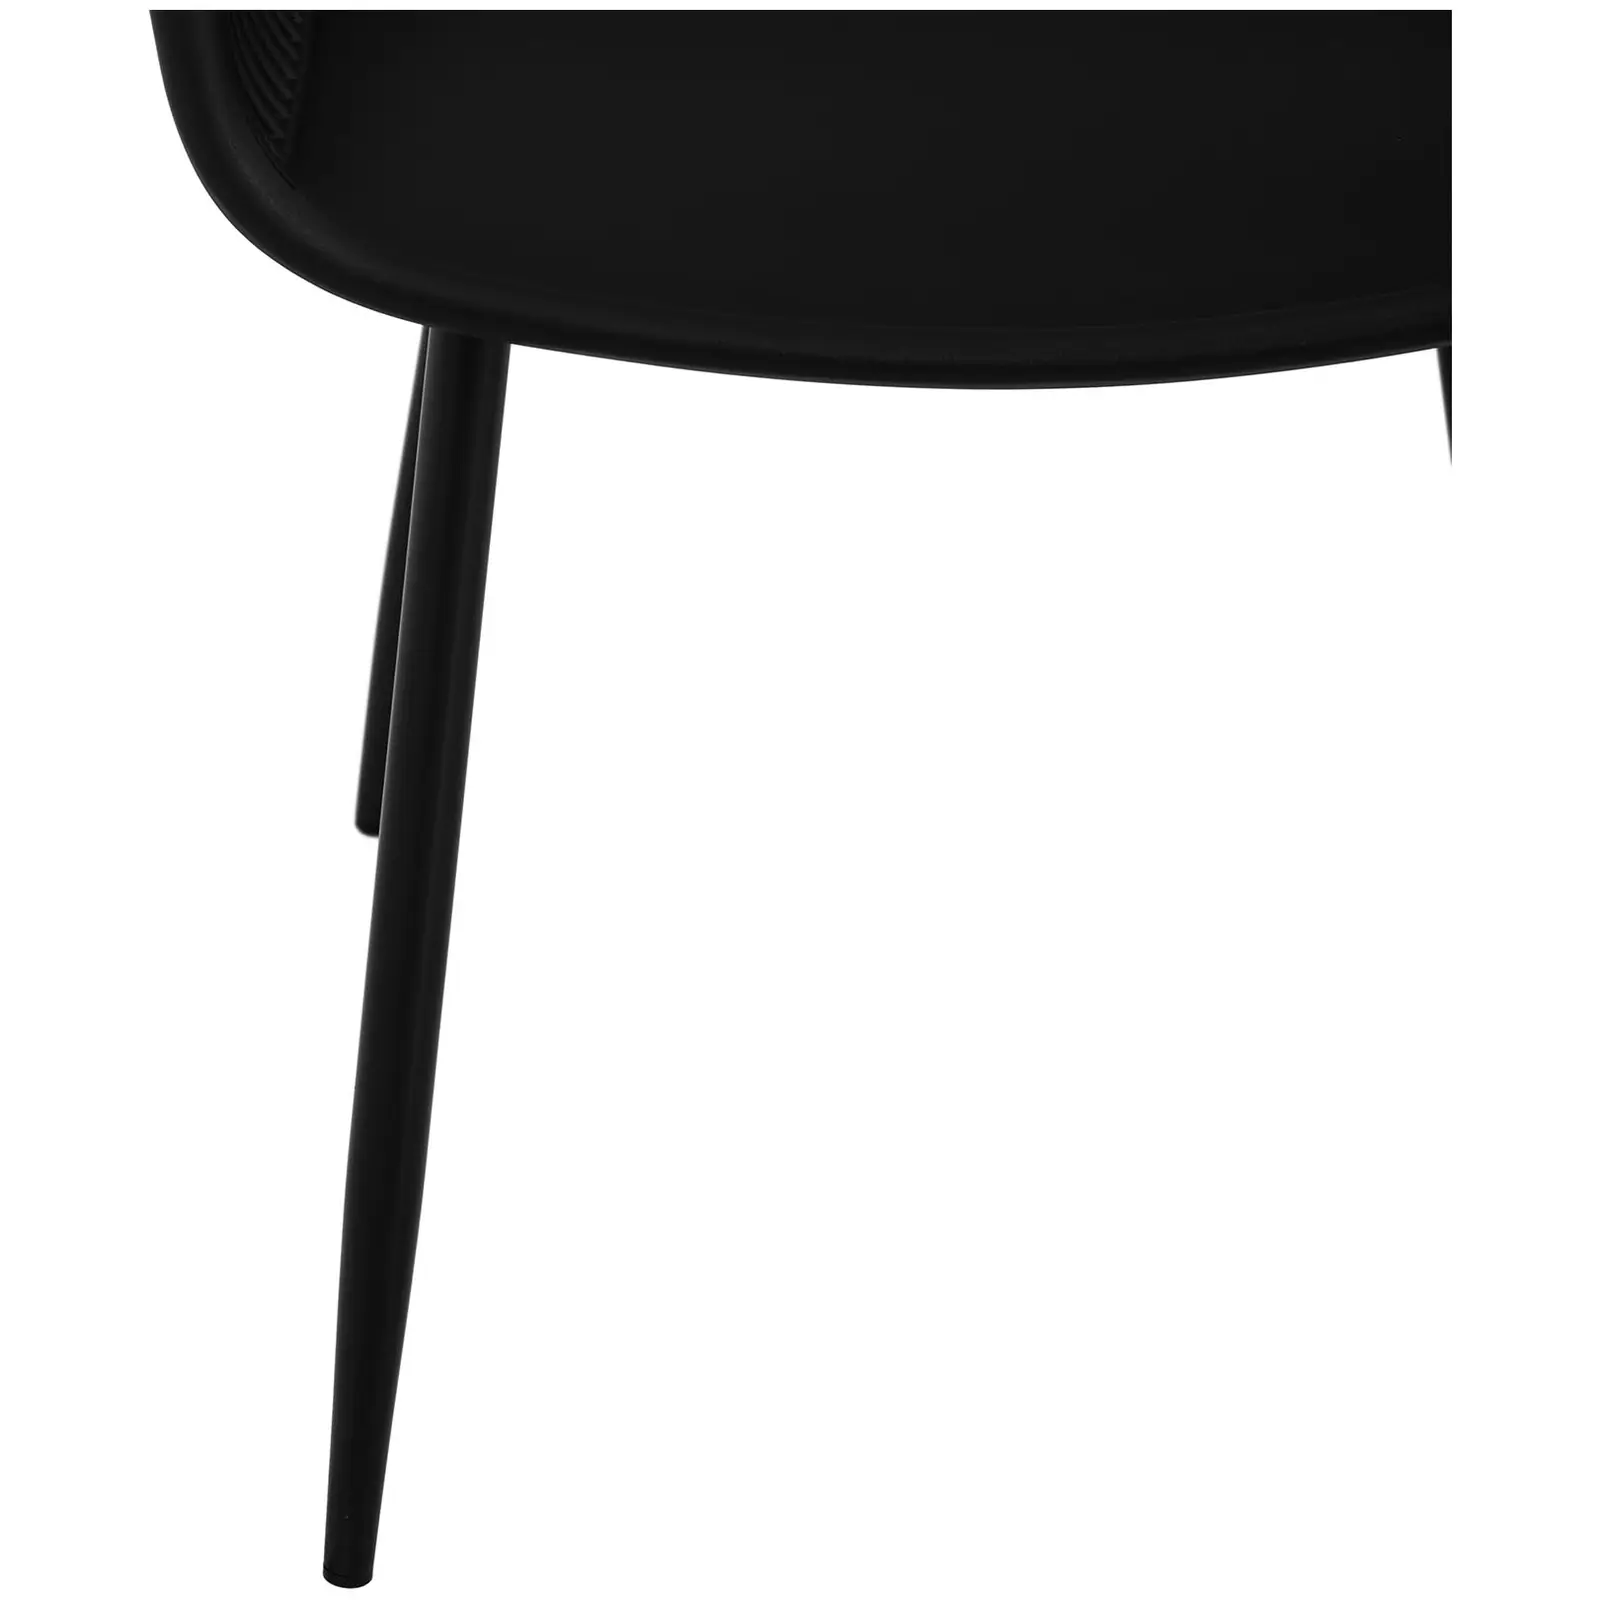 Chaise - Lot de 2 - 150 kg max. - Surface d'assise de 45 x 44 cm - Coloris noir